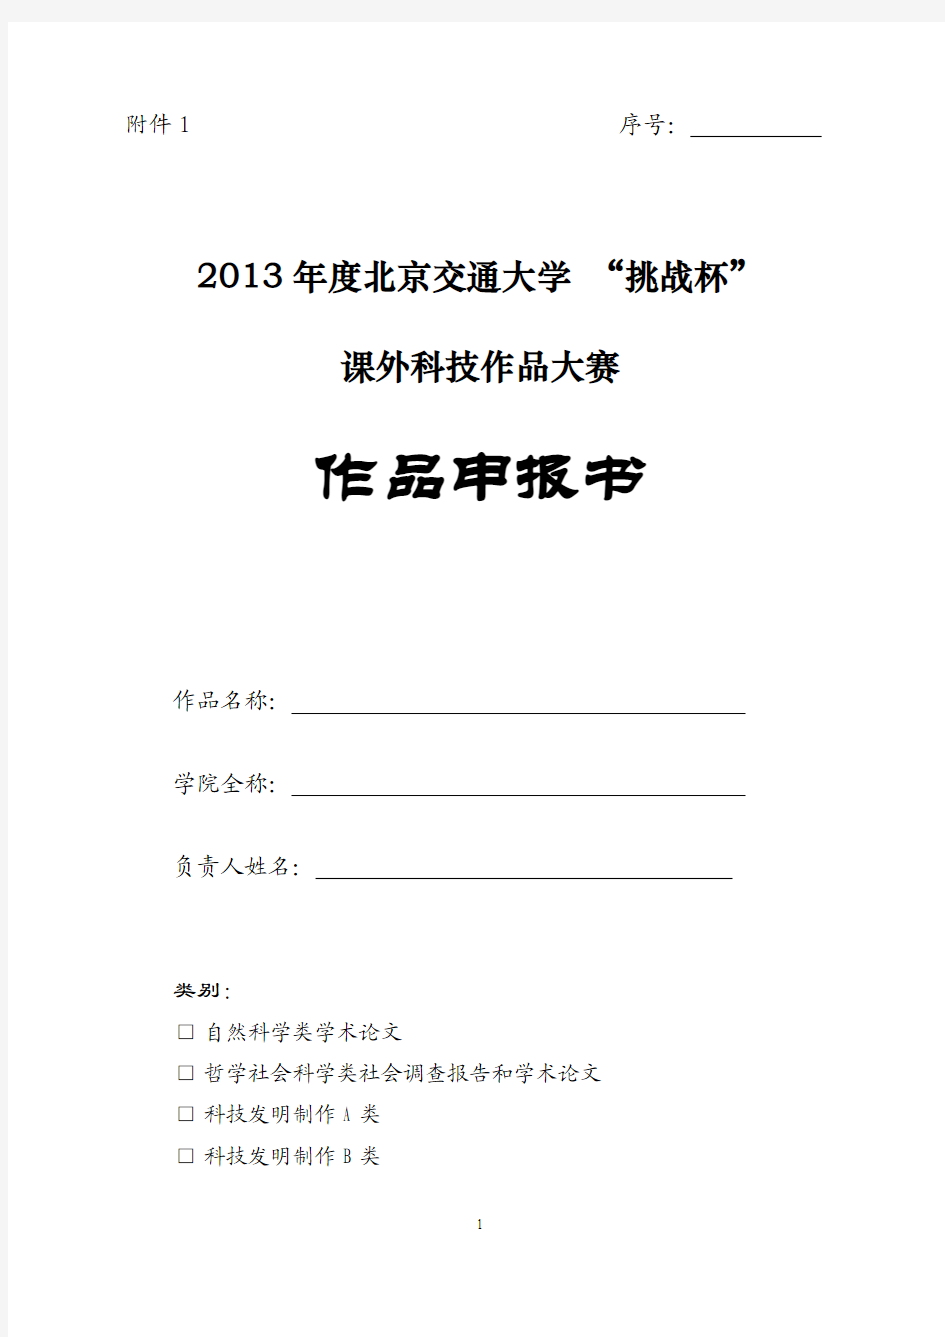 2013年度北京交通大学“挑战杯”课外学术科技作品大赛作品申报书